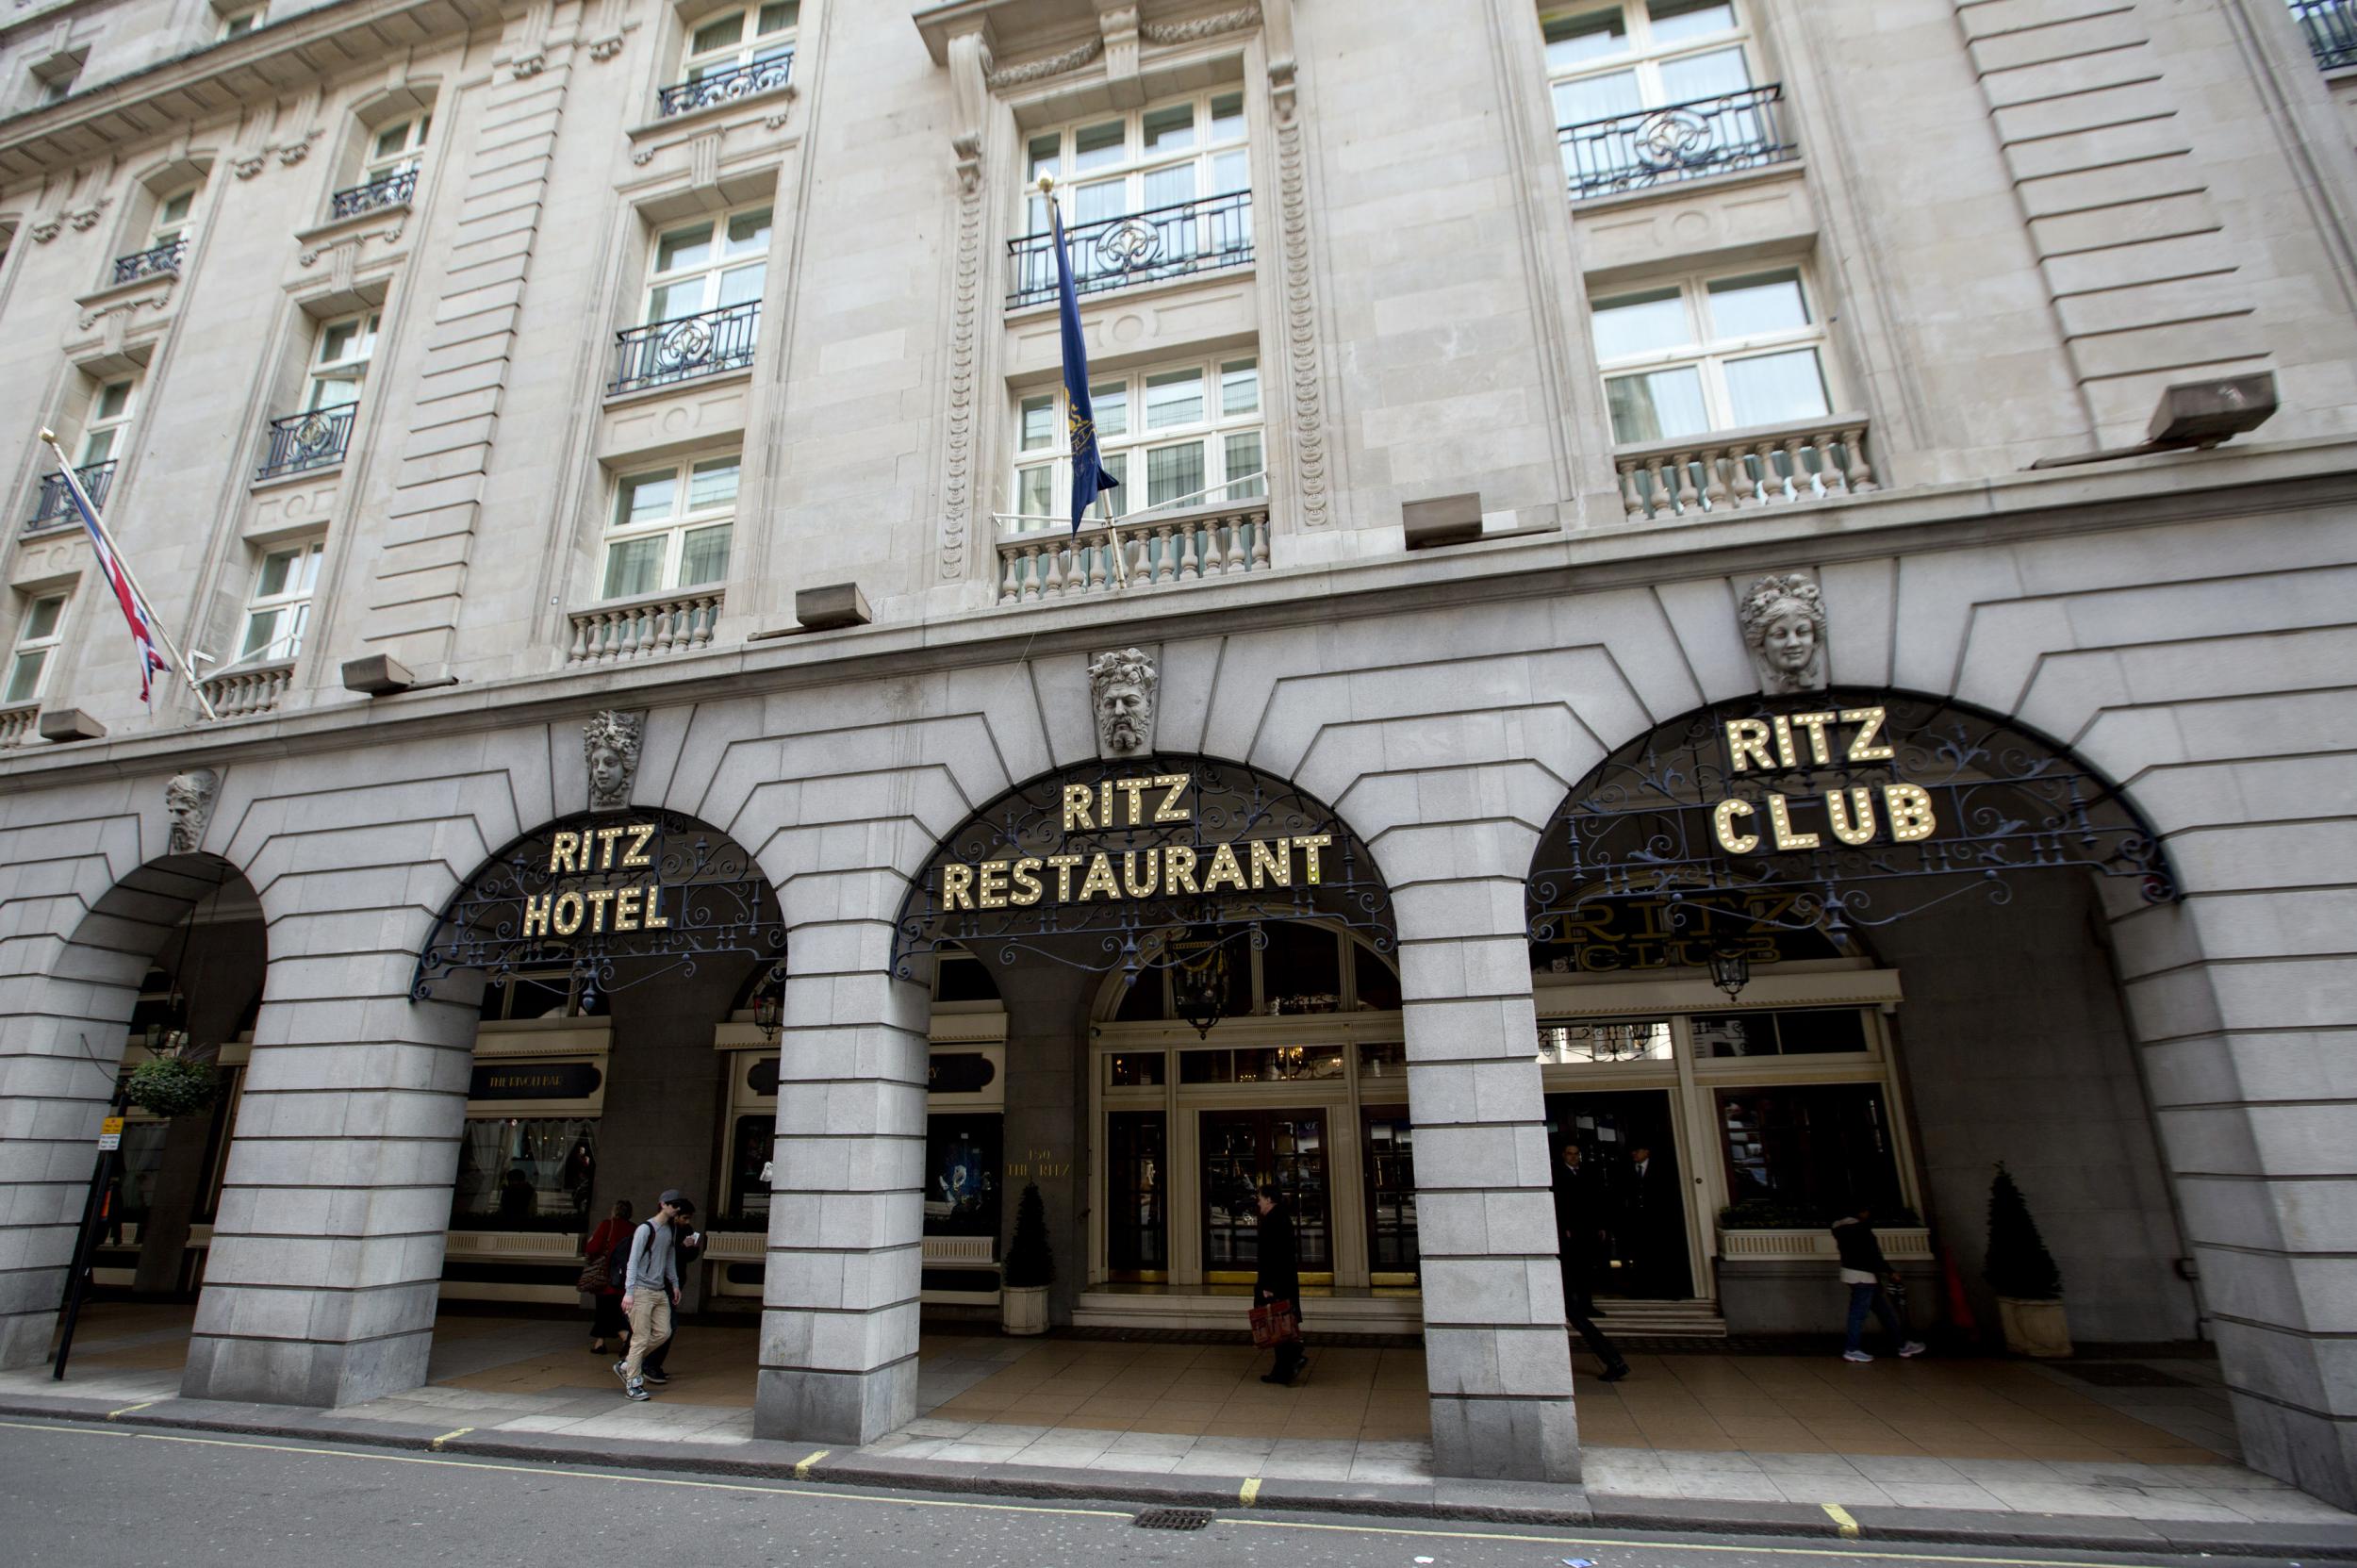 Ritz Hotel in London